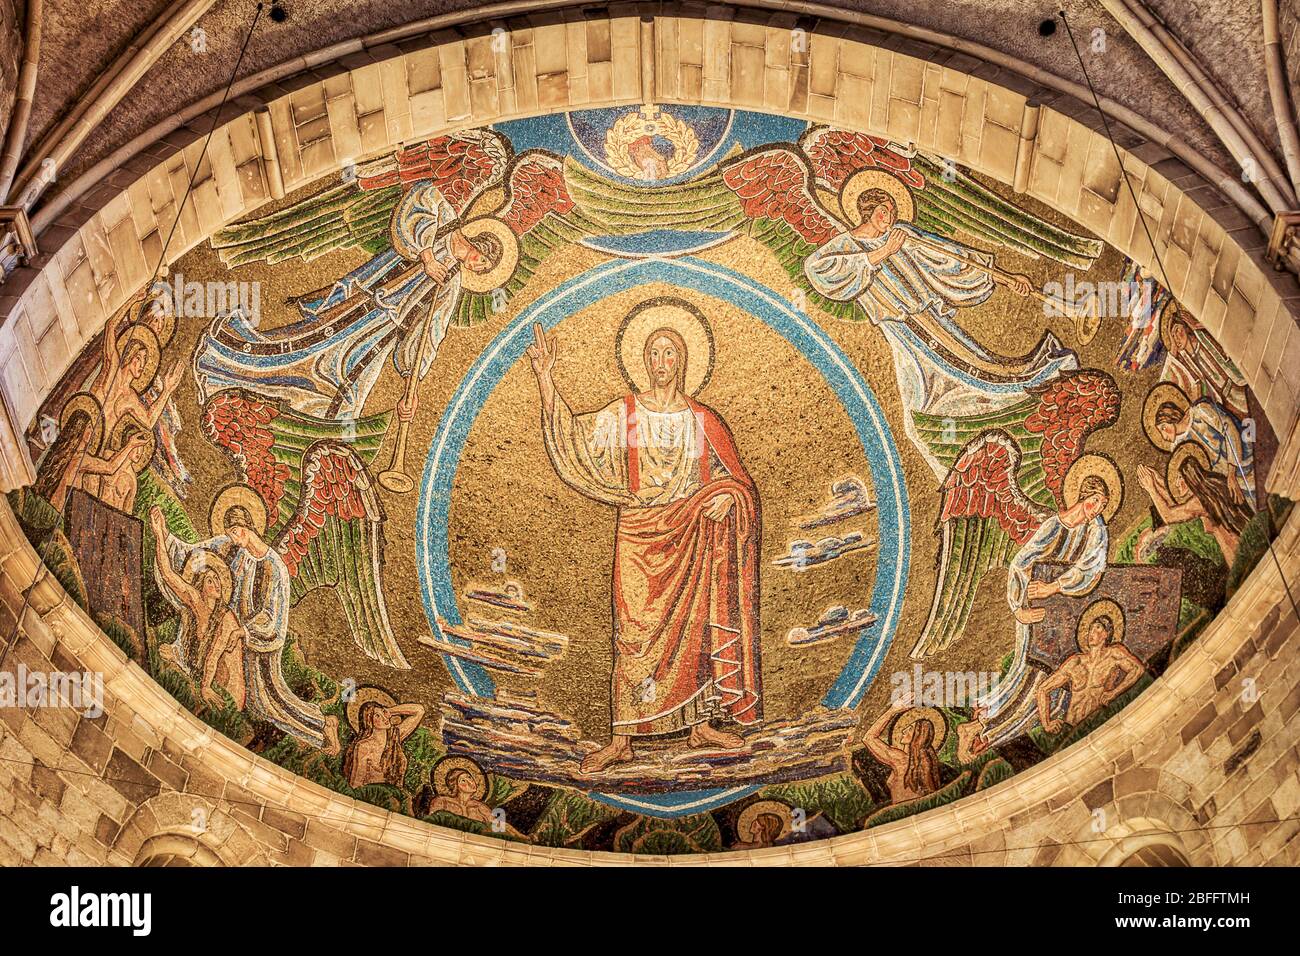 Gesù viene sui cieli del cielo il giorno del giudizio e i morti si alzano dalle loro tombe, un mosaico nella Cattedrale di Lund, 22 luglio 2016 Foto Stock